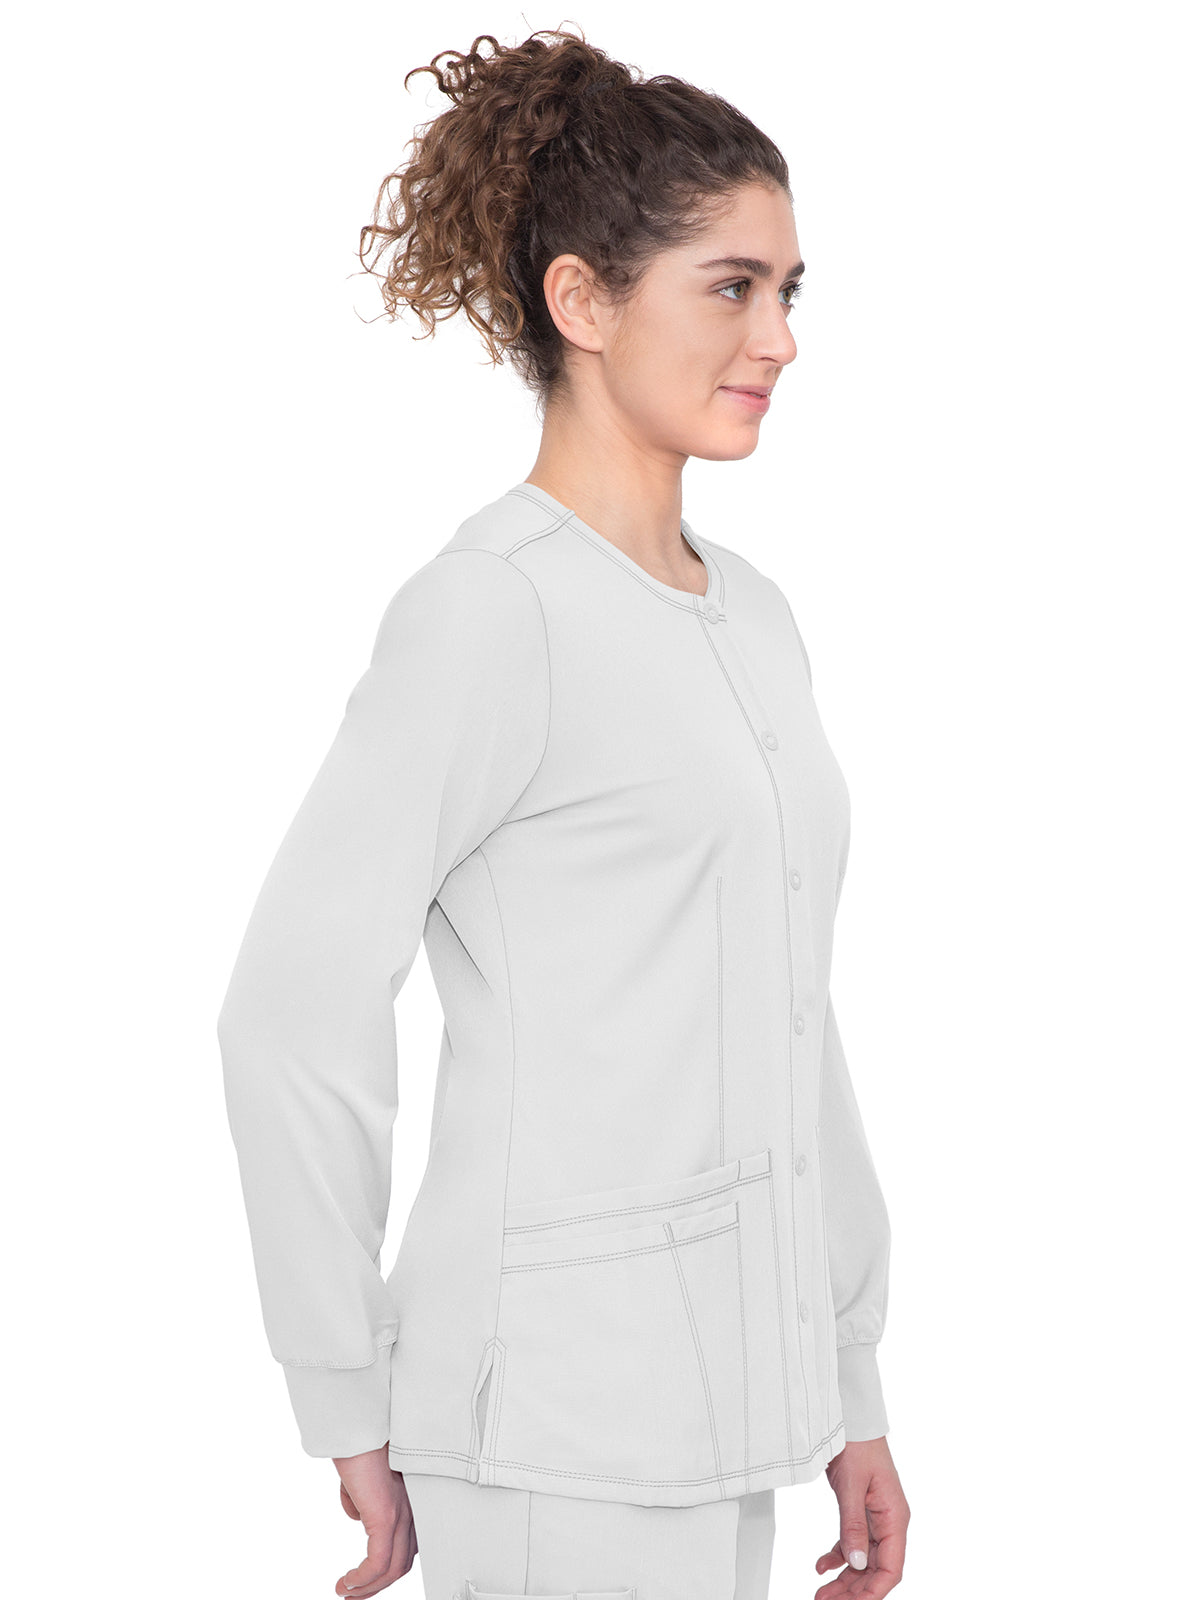 Women's Snap Front Scrub Jacket - 5500 - White